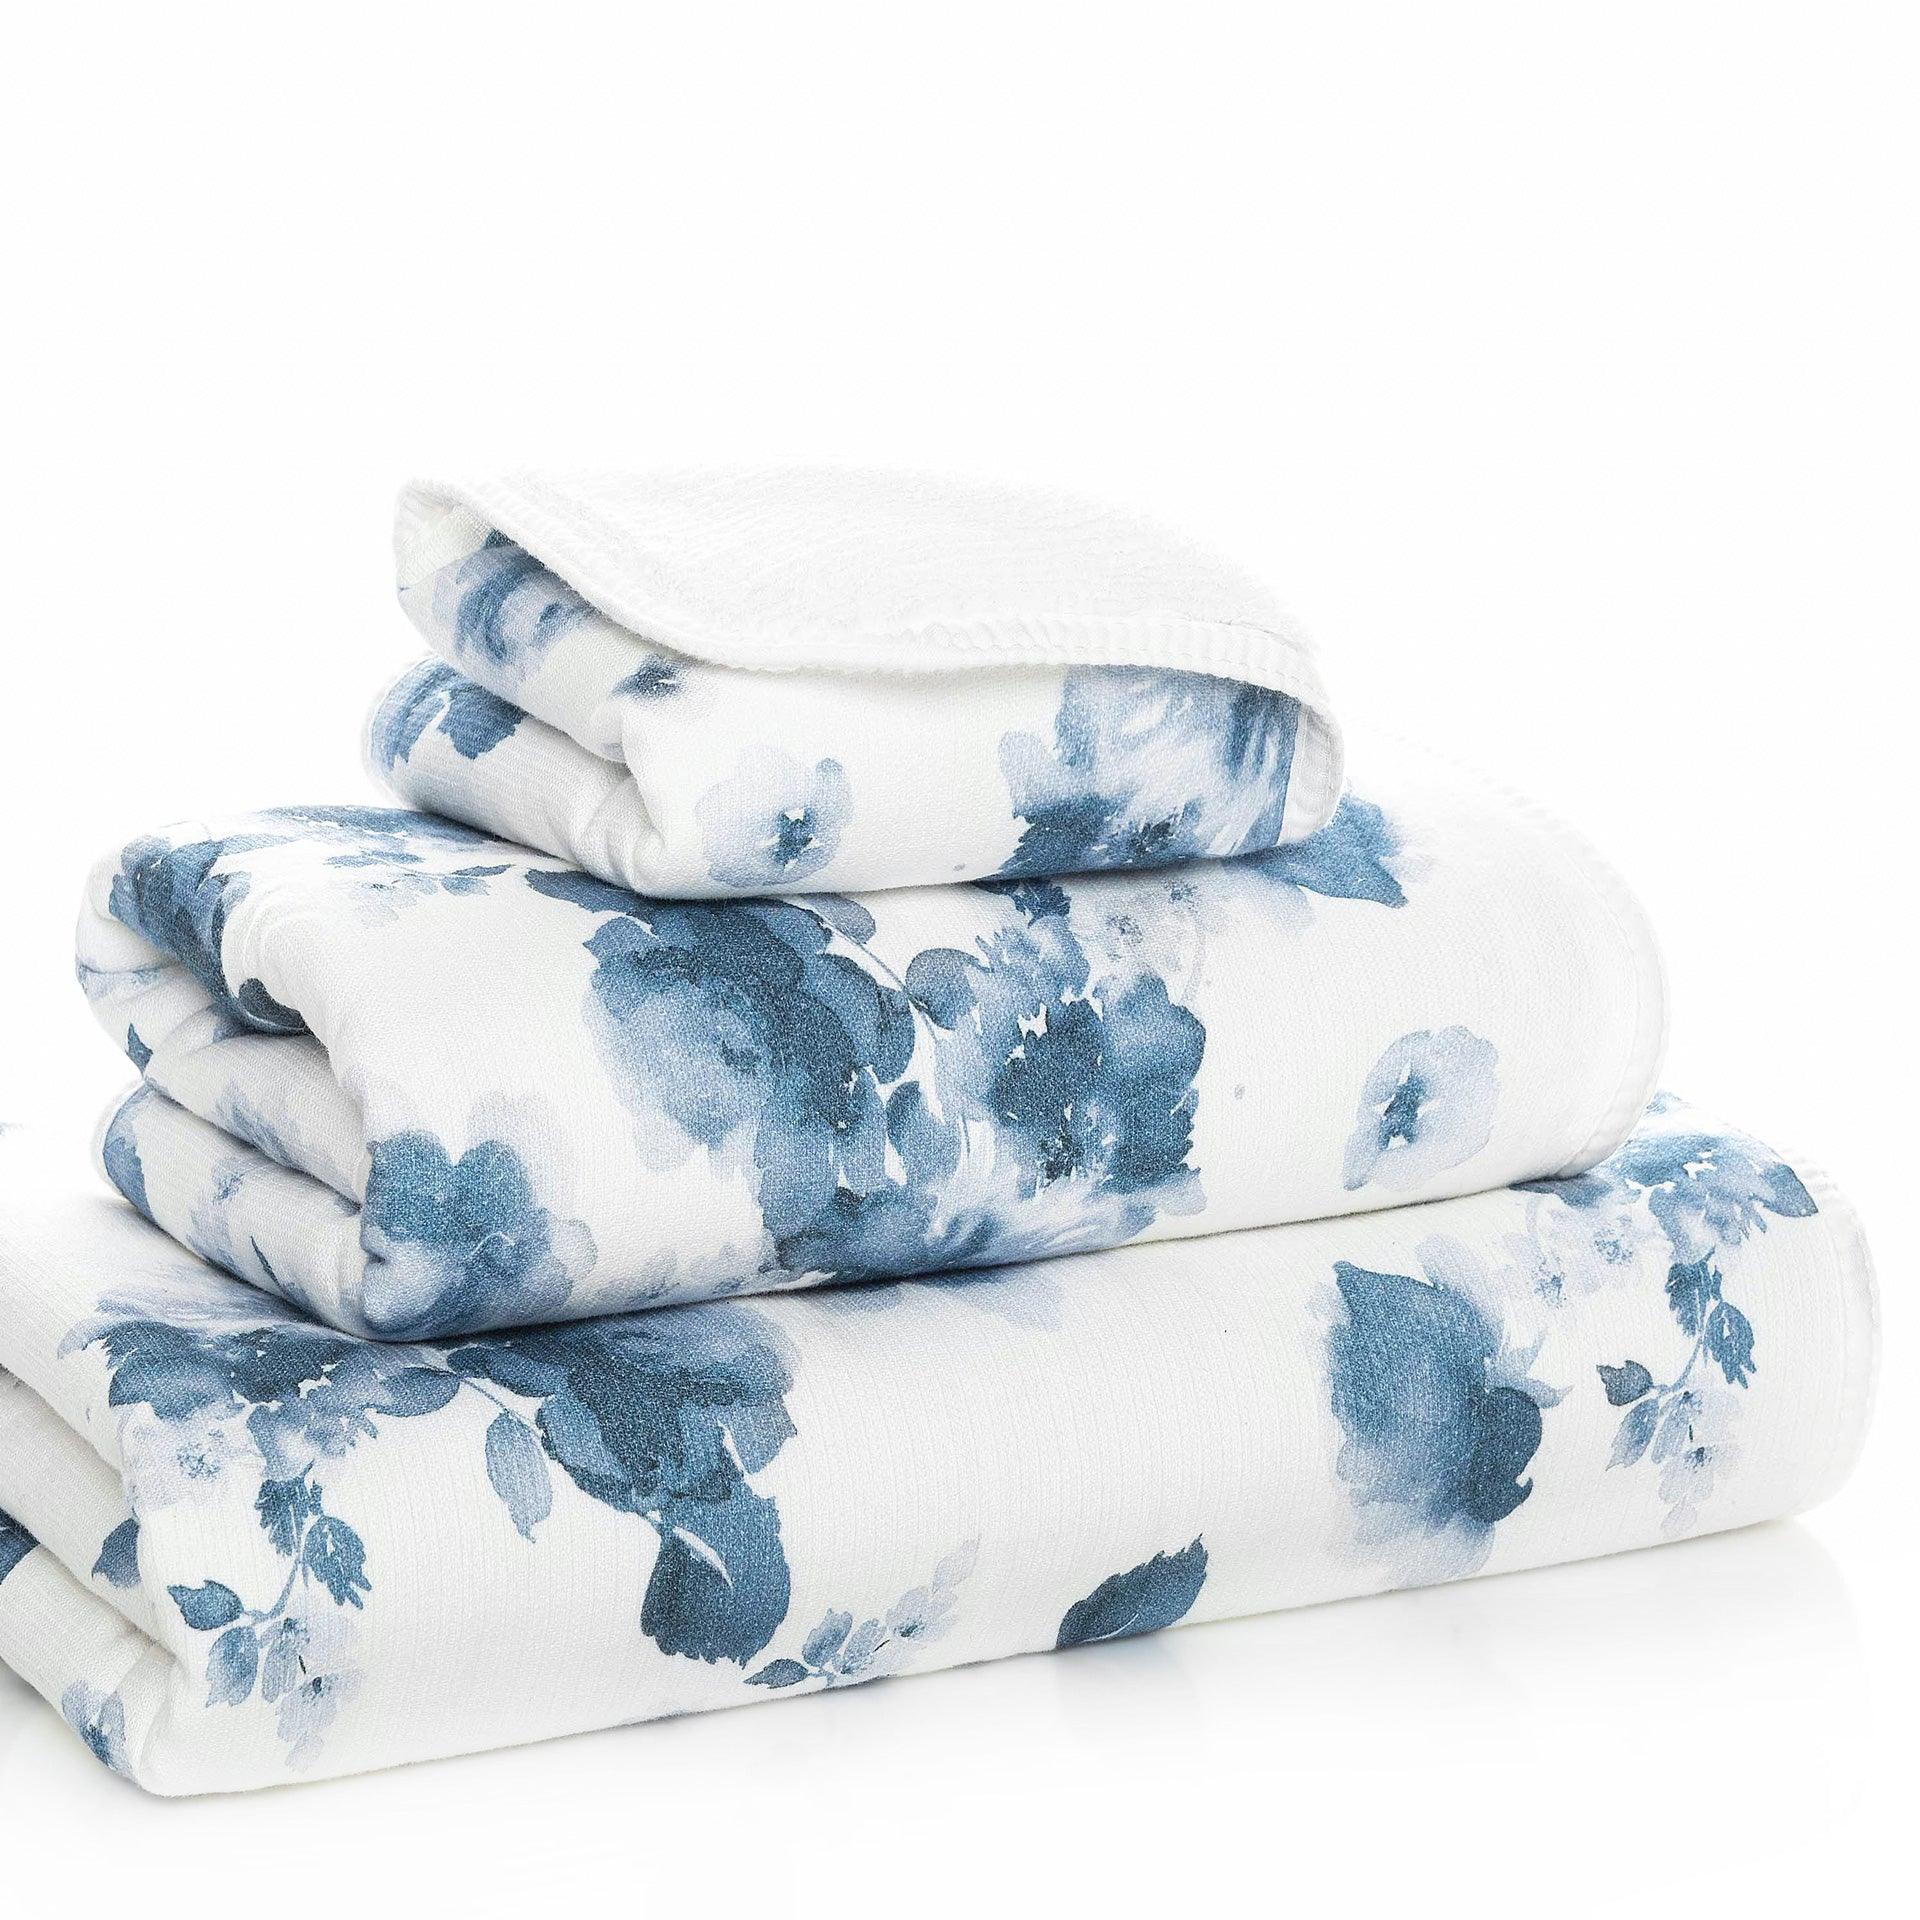 https://elegantlinen.com/cdn/shop/products/bella-towels-elegant-linen-2.jpg?v=1700171533&width=1920